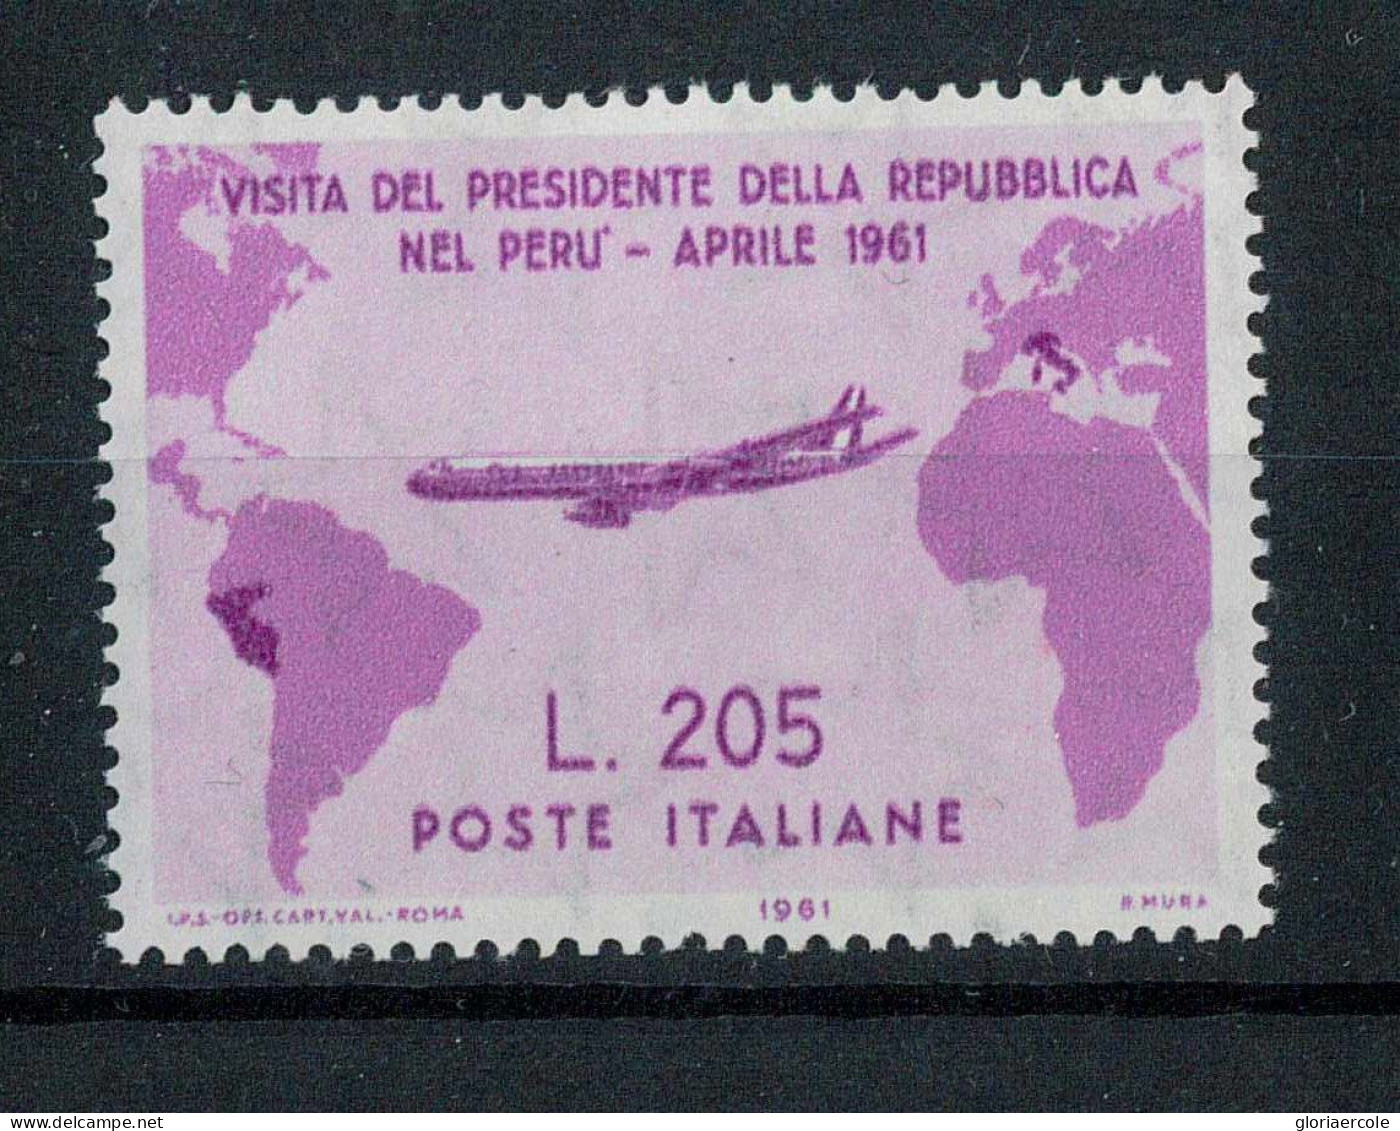 P2717 - REPUBBLICA ITALIANA , GRONCHI ROSA 1961, BELLISSIMO FRANCOBOLLO NUOVO, CERTIFICFDATO CILIO. - Sicilië